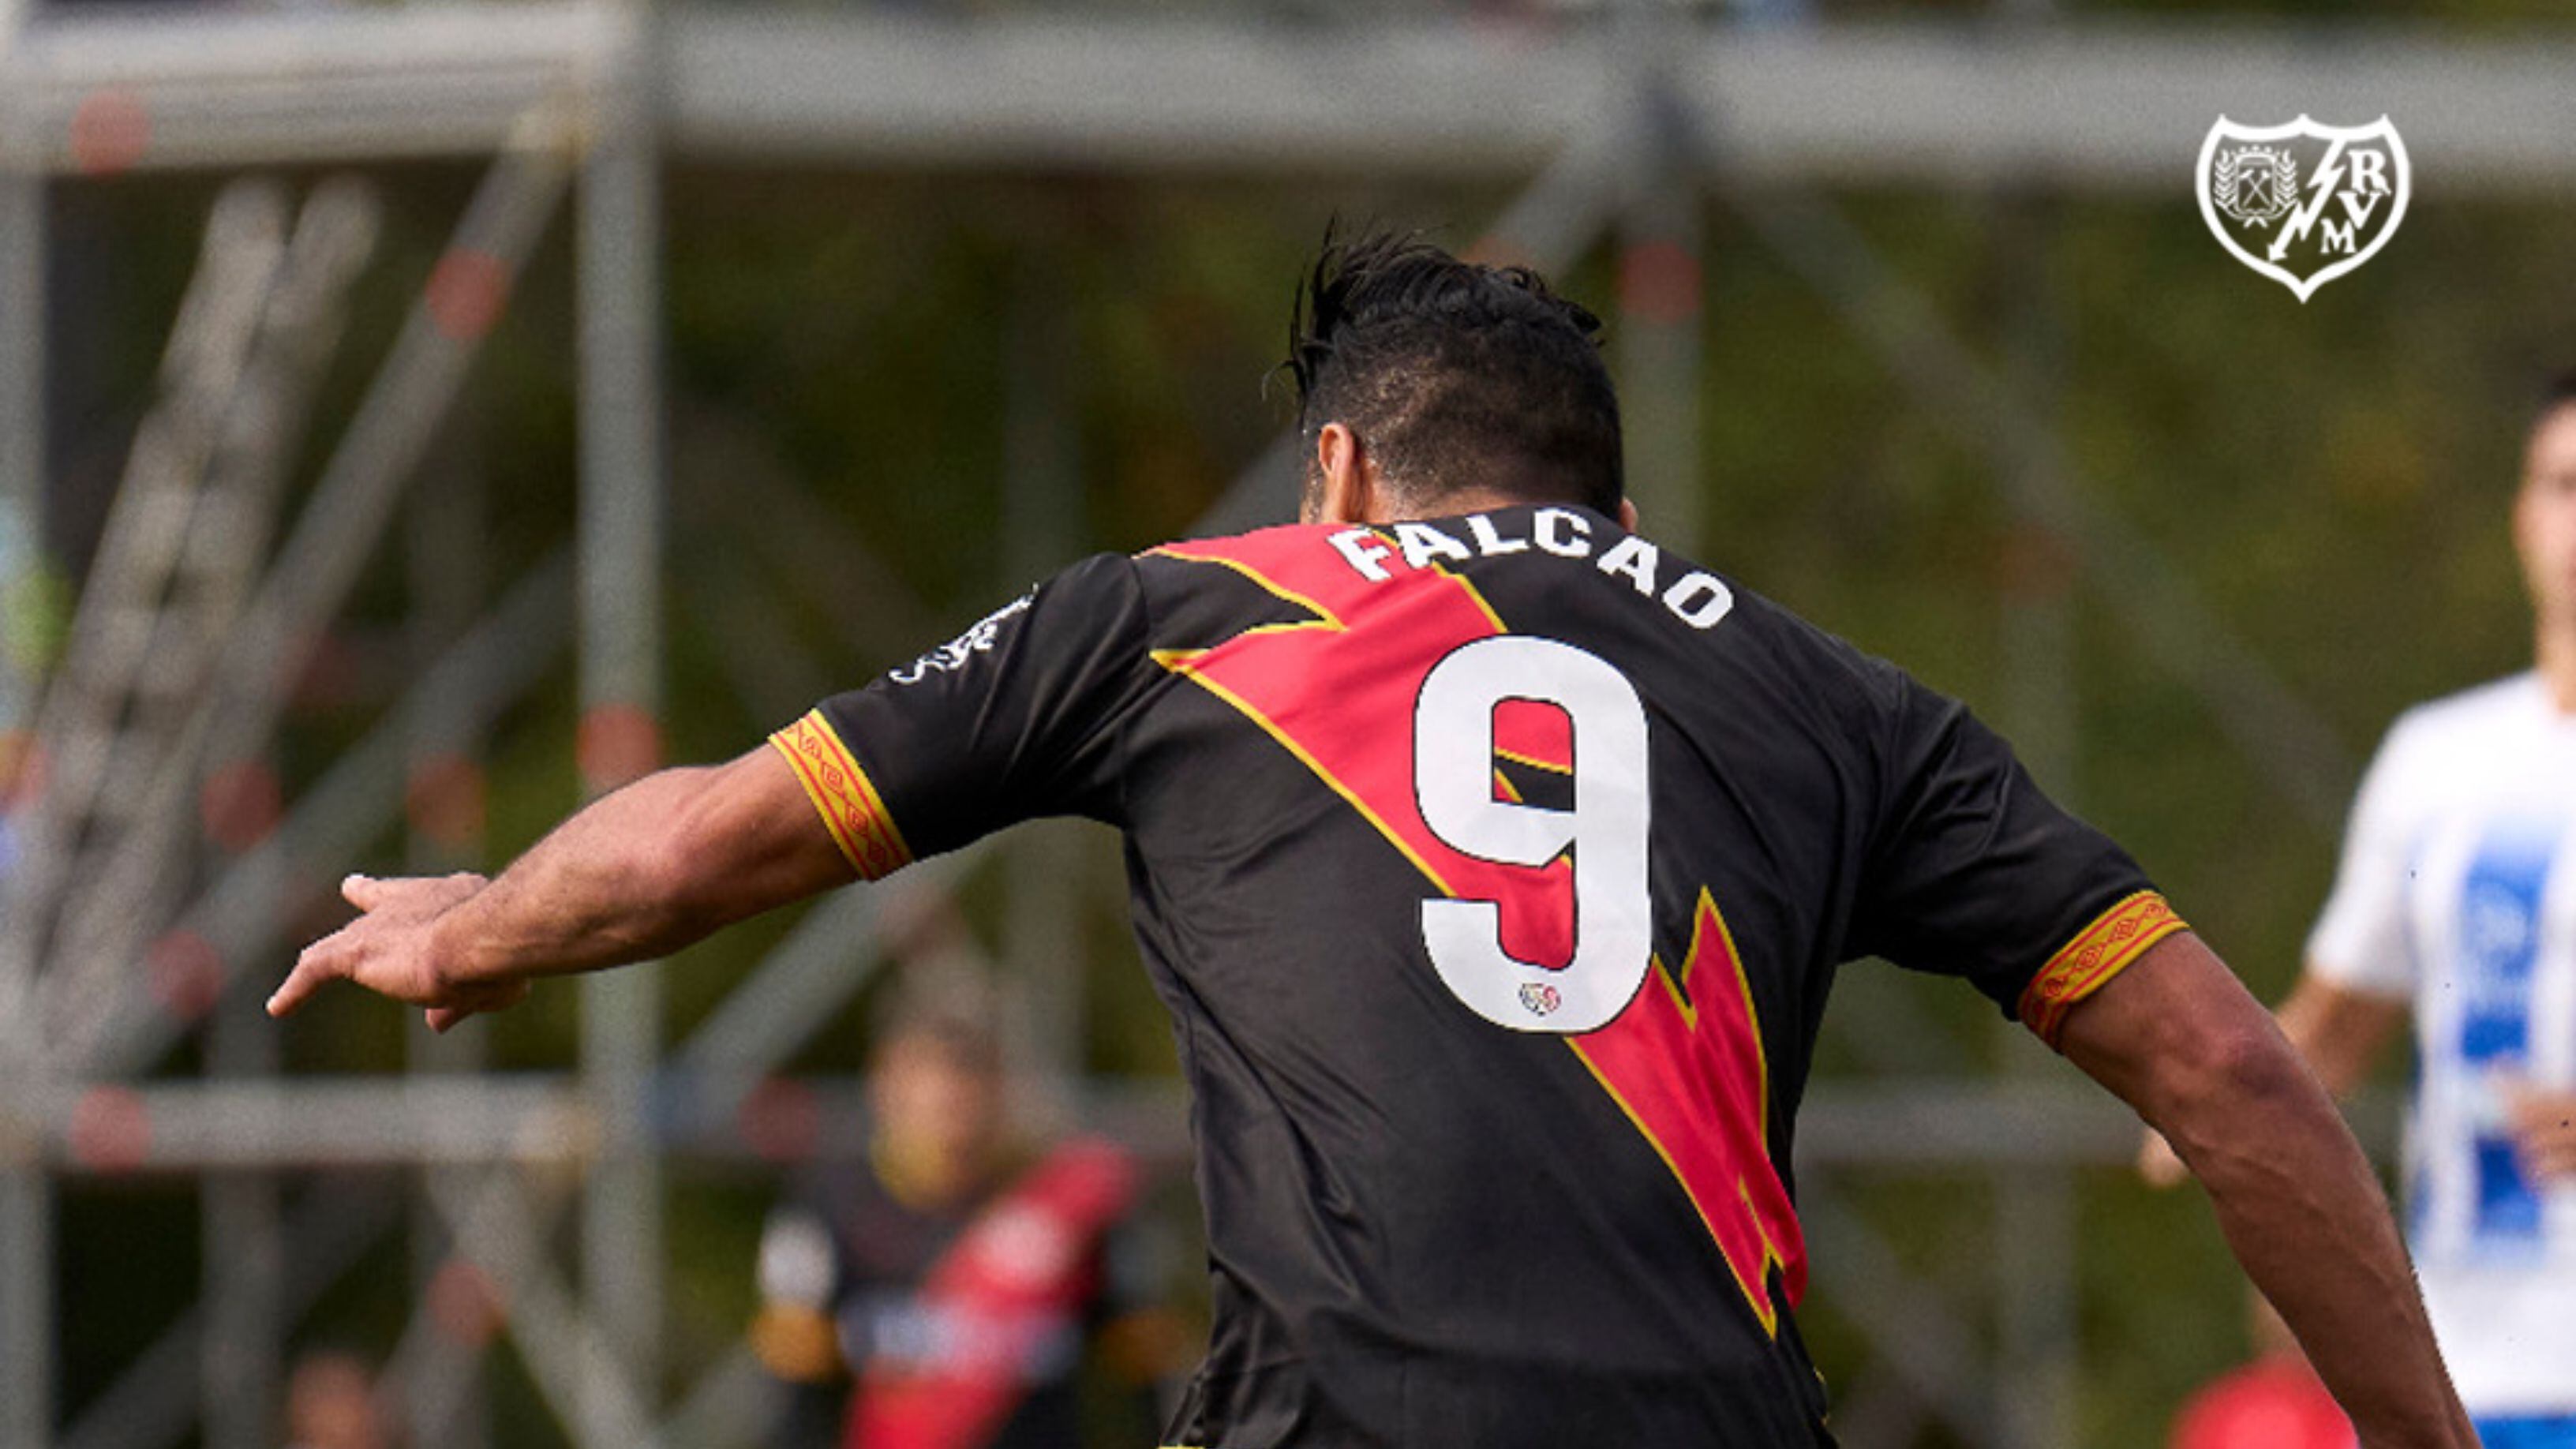 Radamel Falcao jugó 63 minutos en el partido de Copa del Rey entre Rayo Vallecano vs. Atlético Lugones - crédito Rayo Vallecano